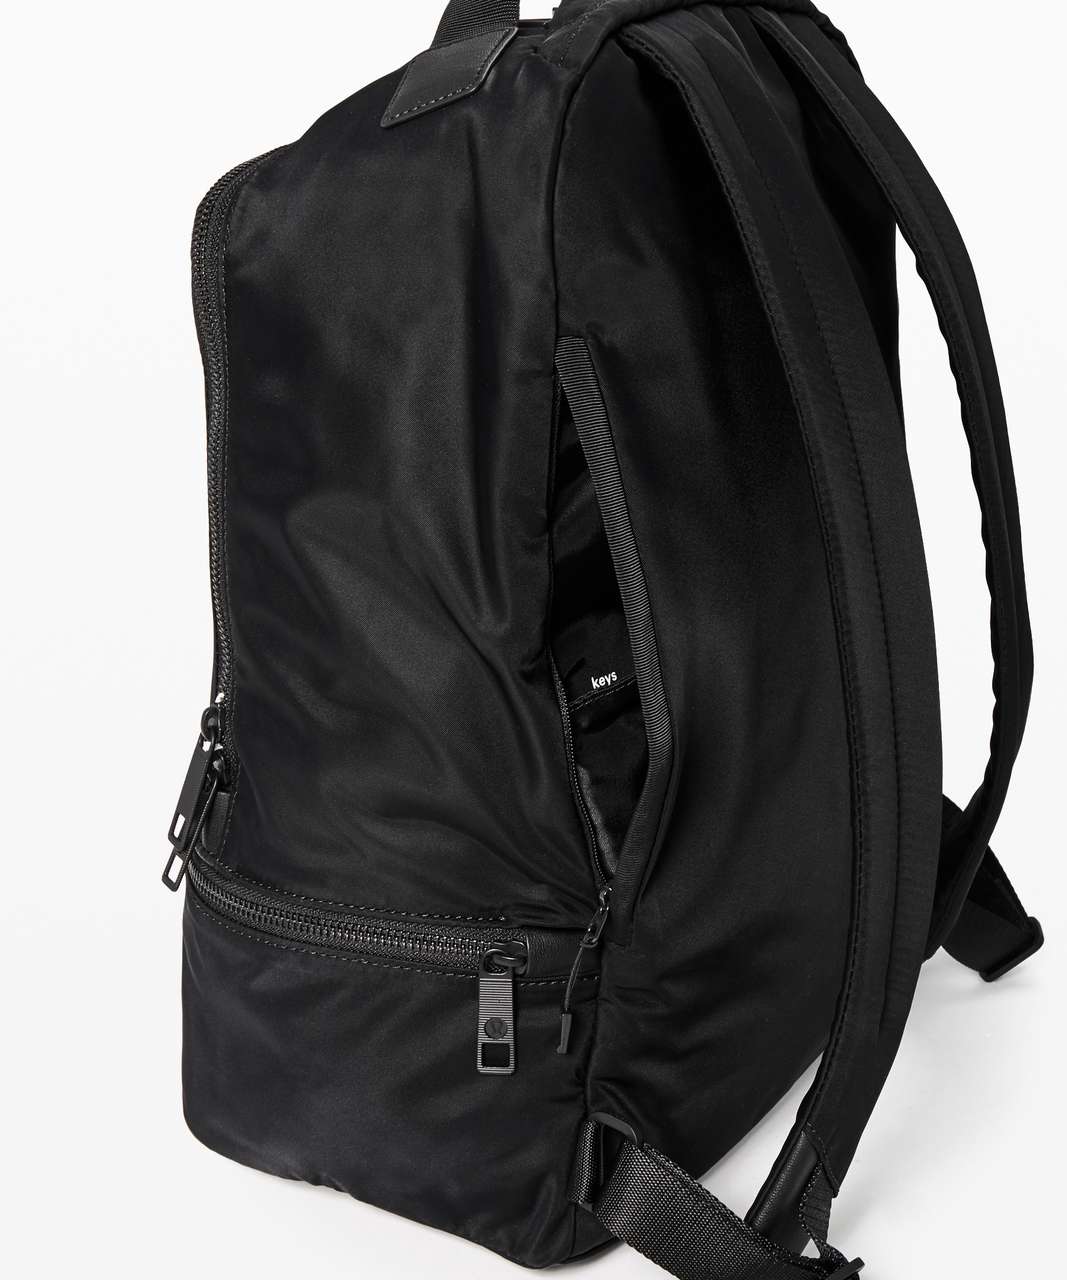 Lululemon City Adventurer Backpack *17L - Black (Third Release)